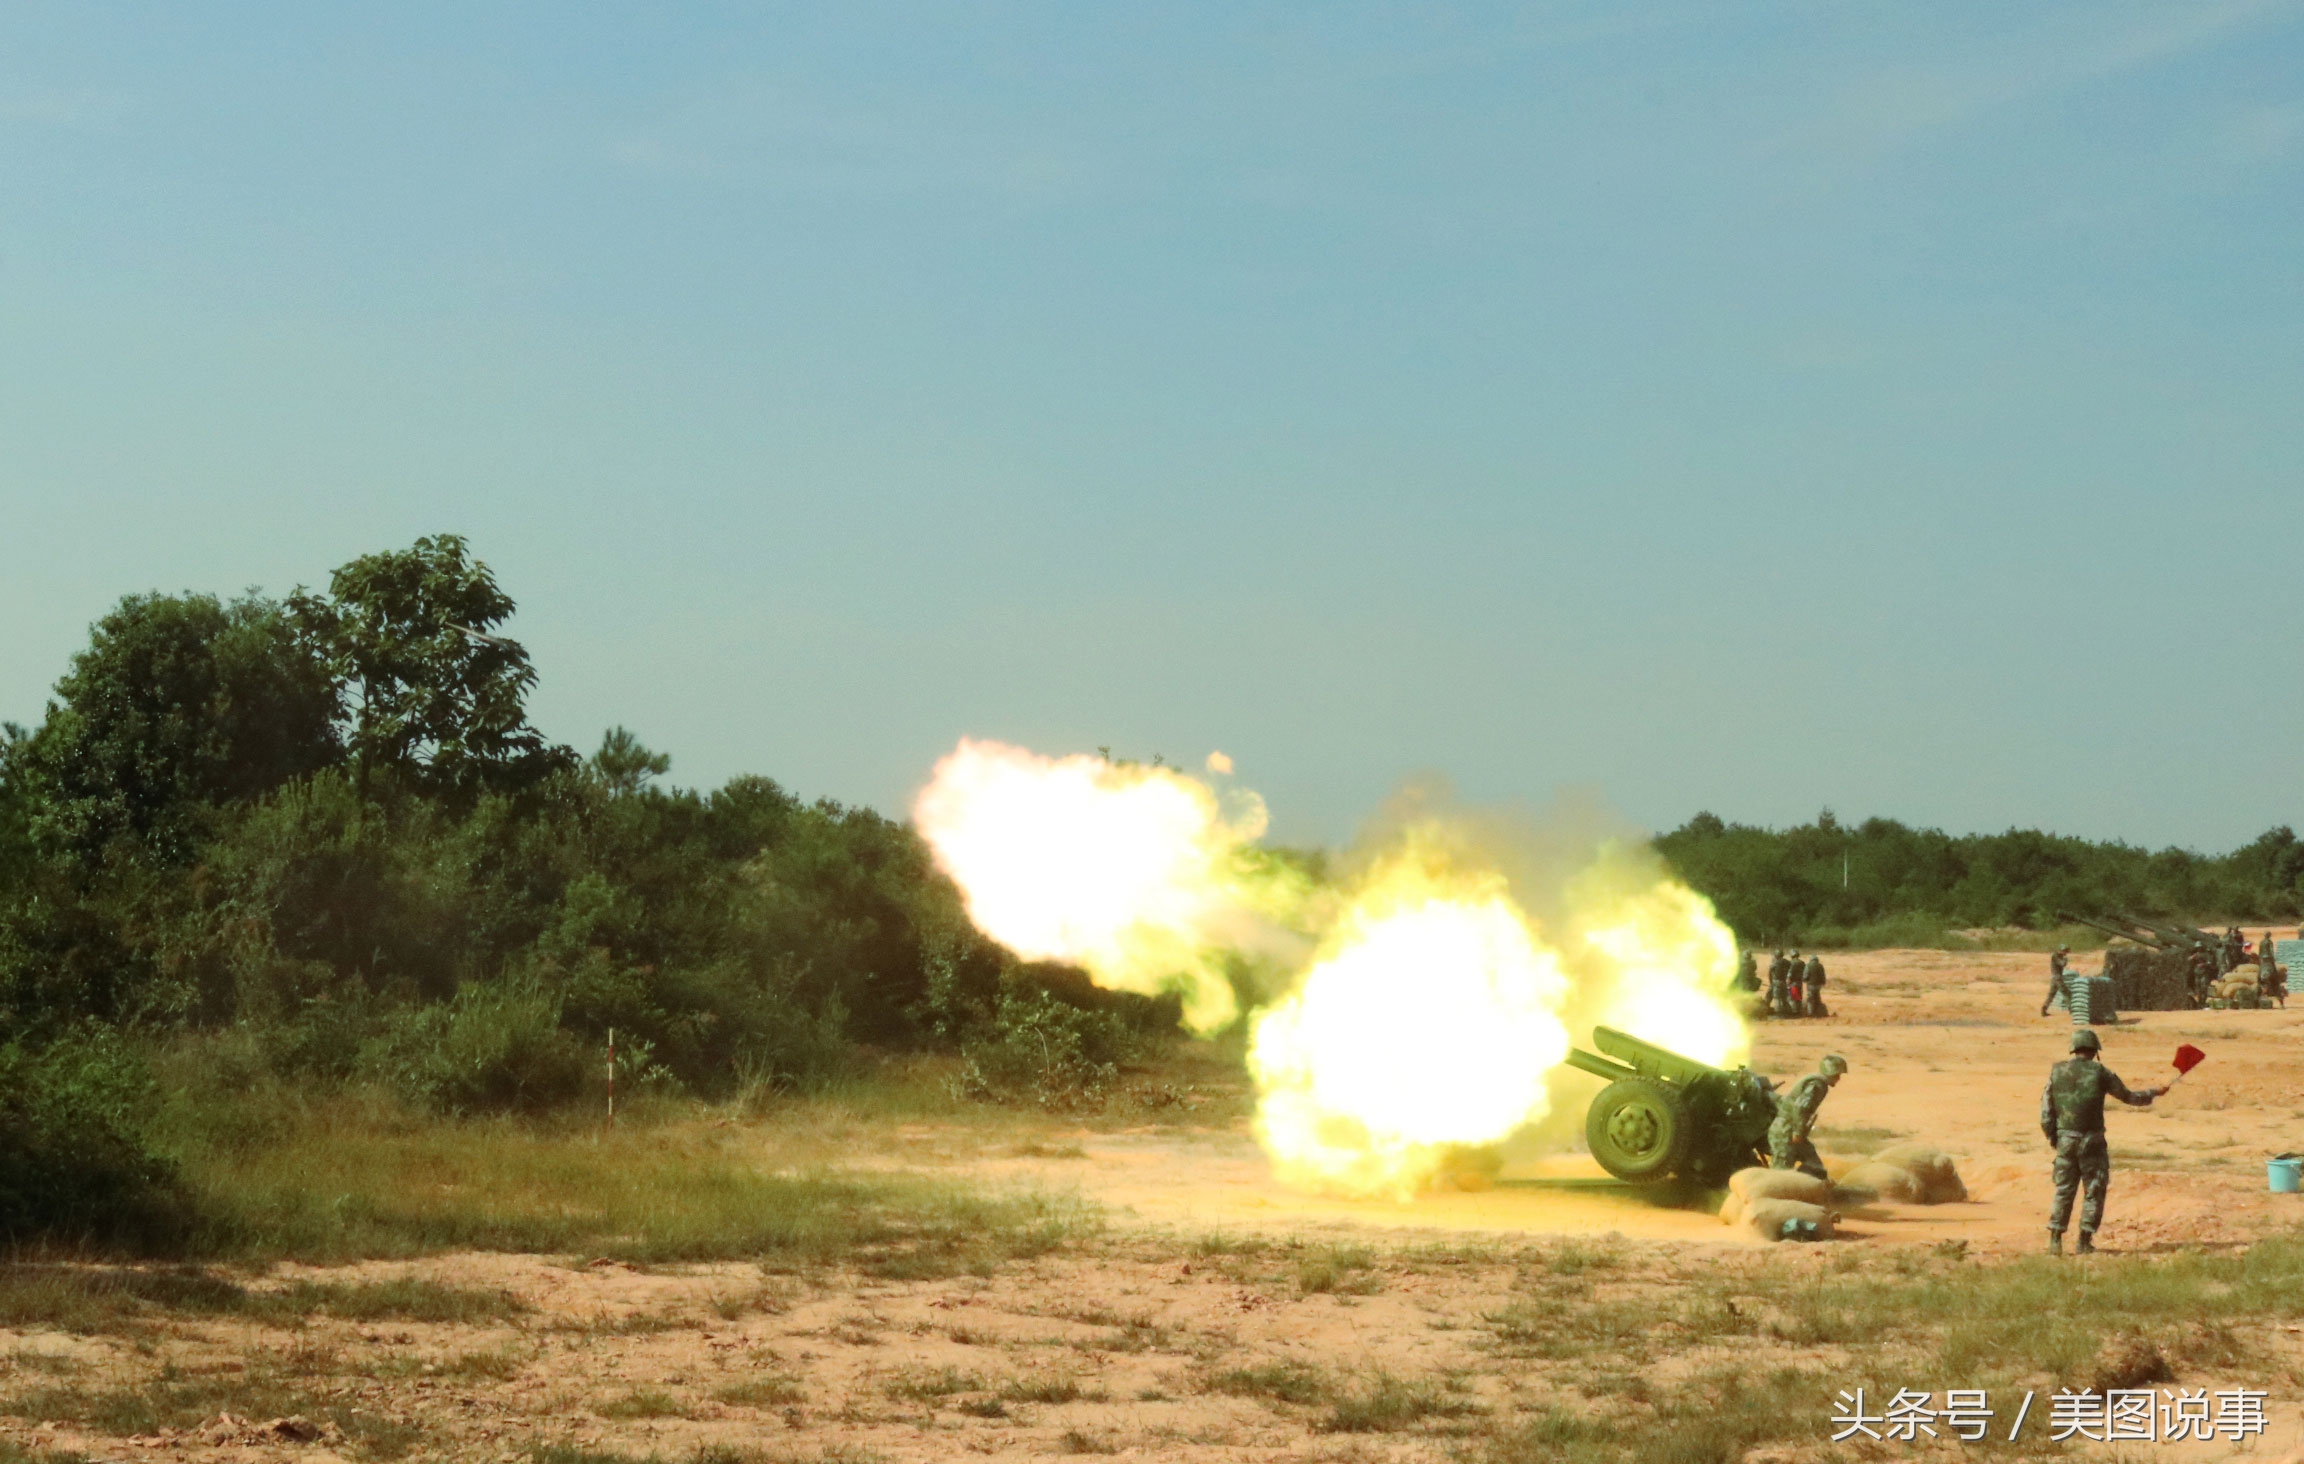 96式122毫米牵引榴弹炮图片